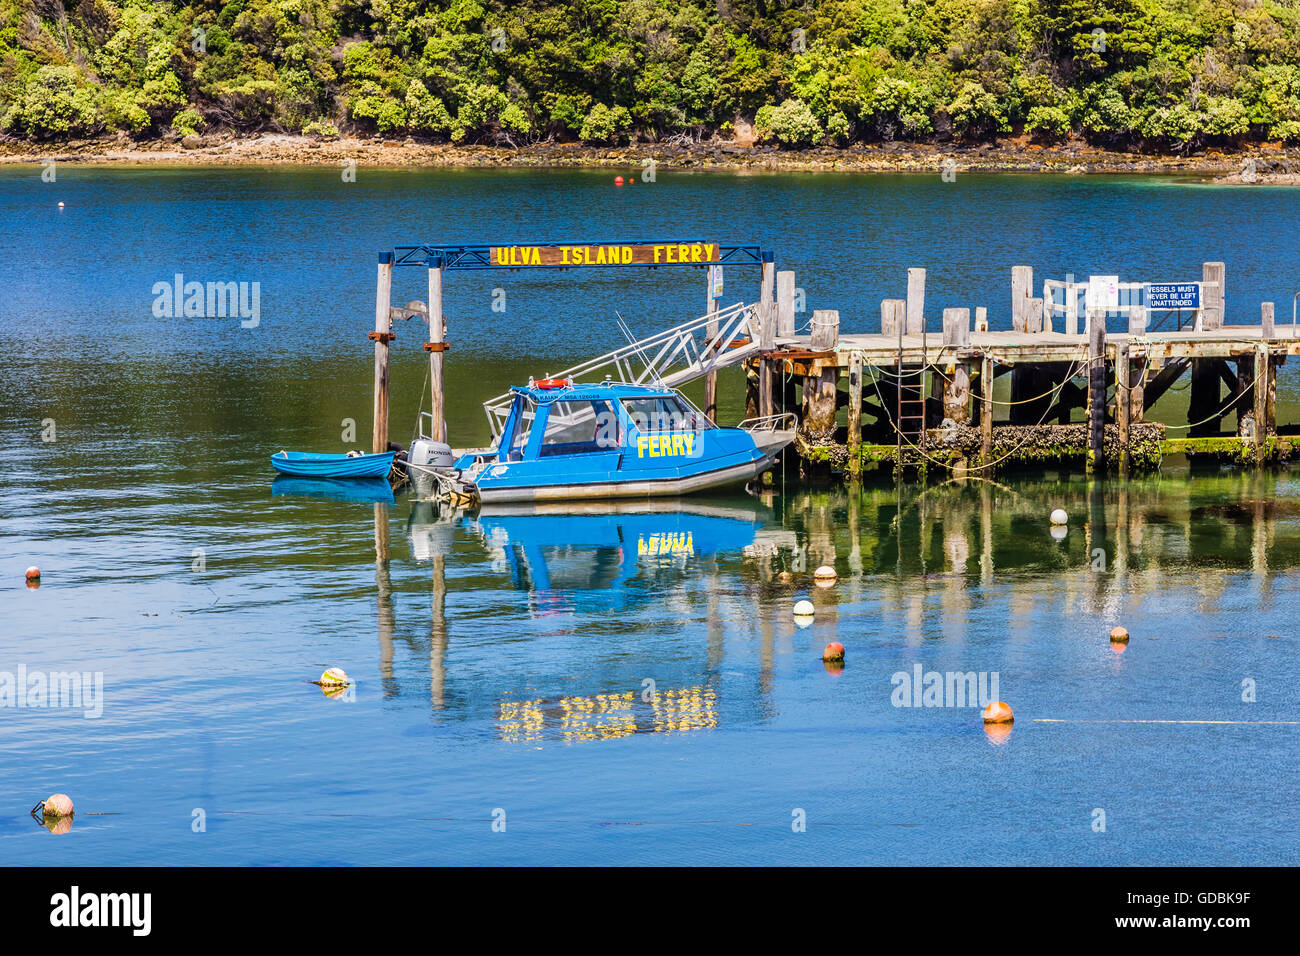 La nuova Zelanda, l'isola di Stewart, Golden Bay, Ulva Island Ferry porto: 16 Febbraio 2016 Foto Stock